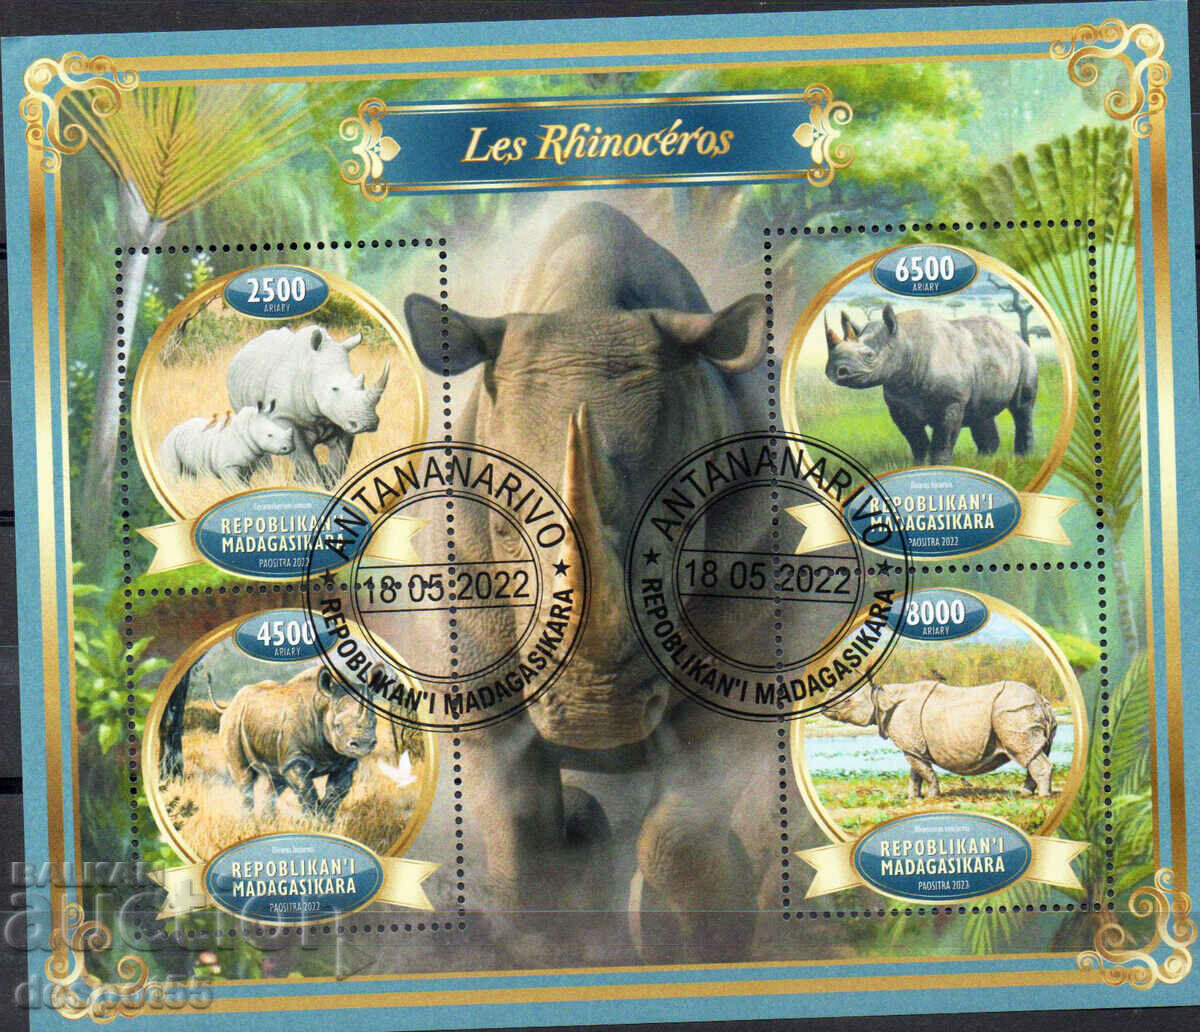 2022. Madagascar. Rhinoceros - Illegal stamp. Block.